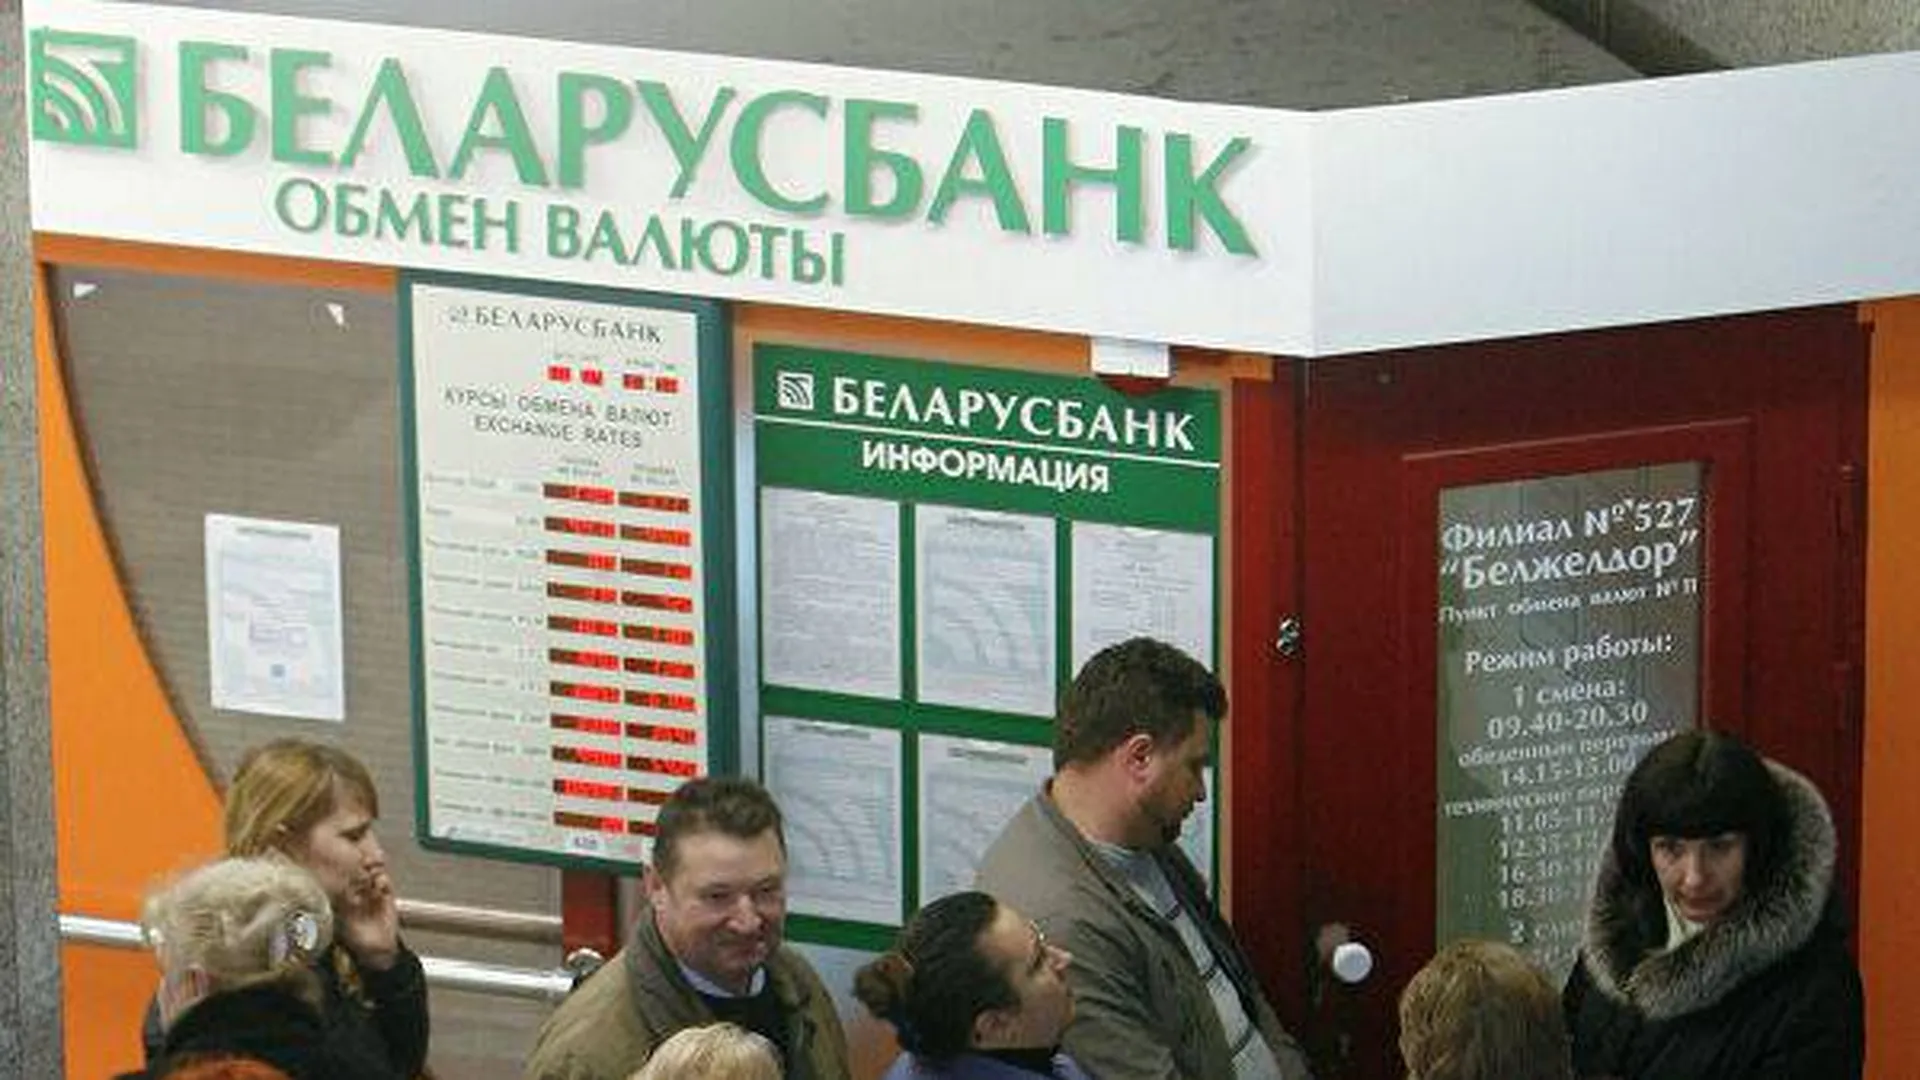 Белорусский банк валюты. Беларусбанк обмен валют. Обменный пункт на белорусском вокзале Беларусбанк. Обменный пункт на белорусском вокзале. Обмен валюты у вокзала.